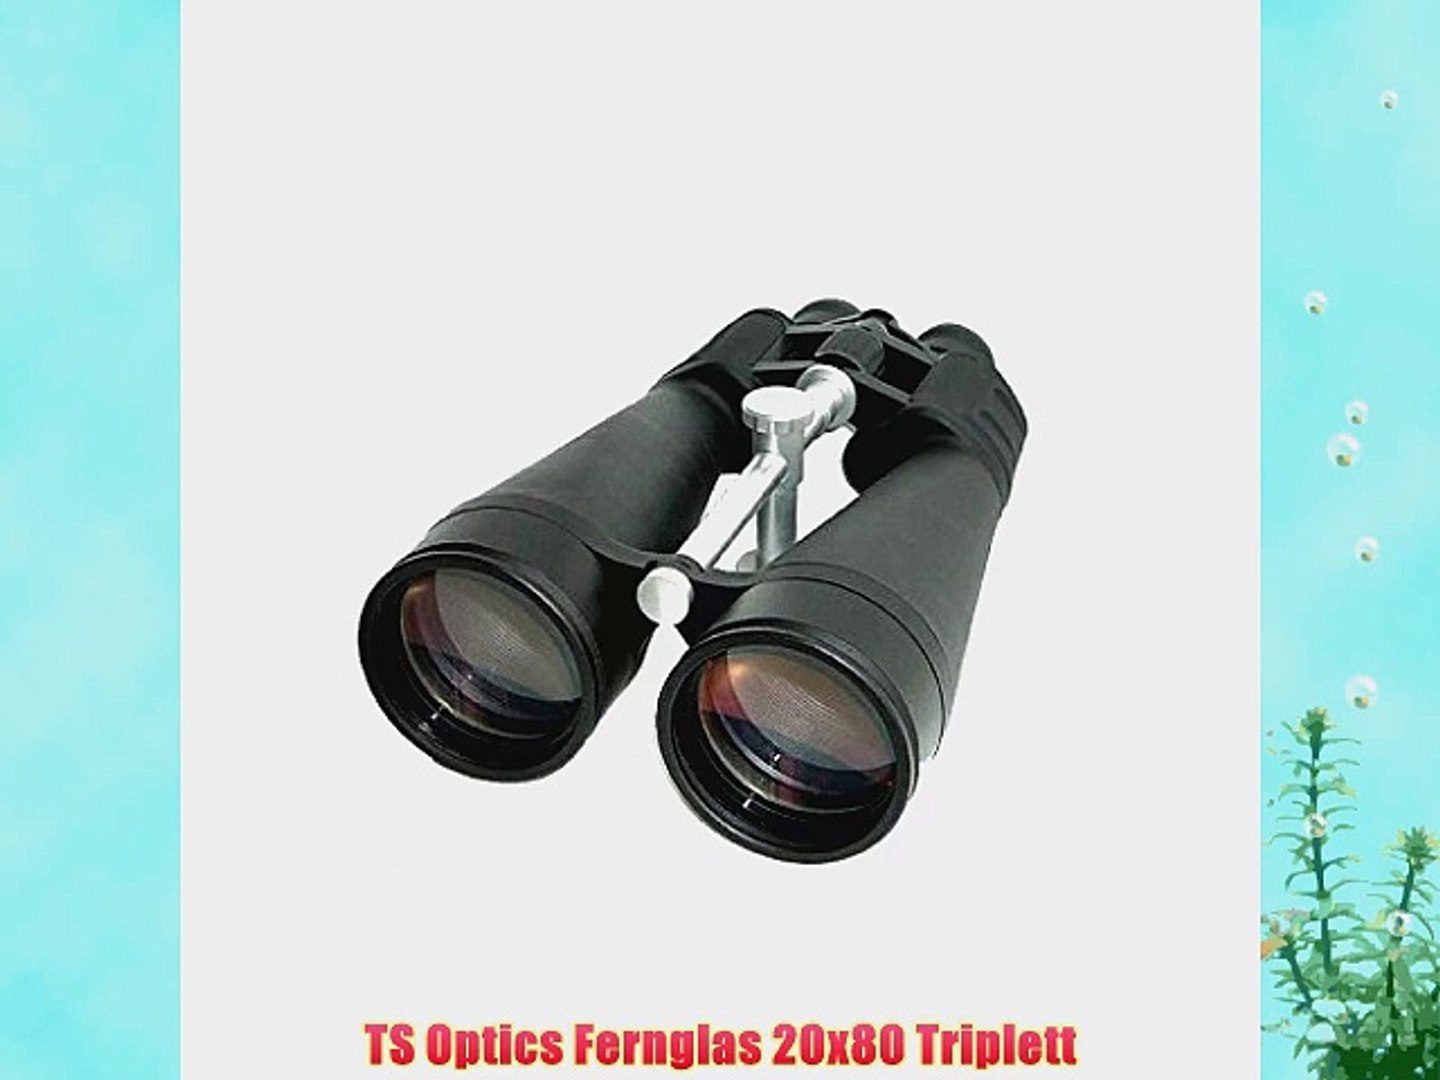 TS Optics Fernglas 20x80 Triplett - video Dailymotion